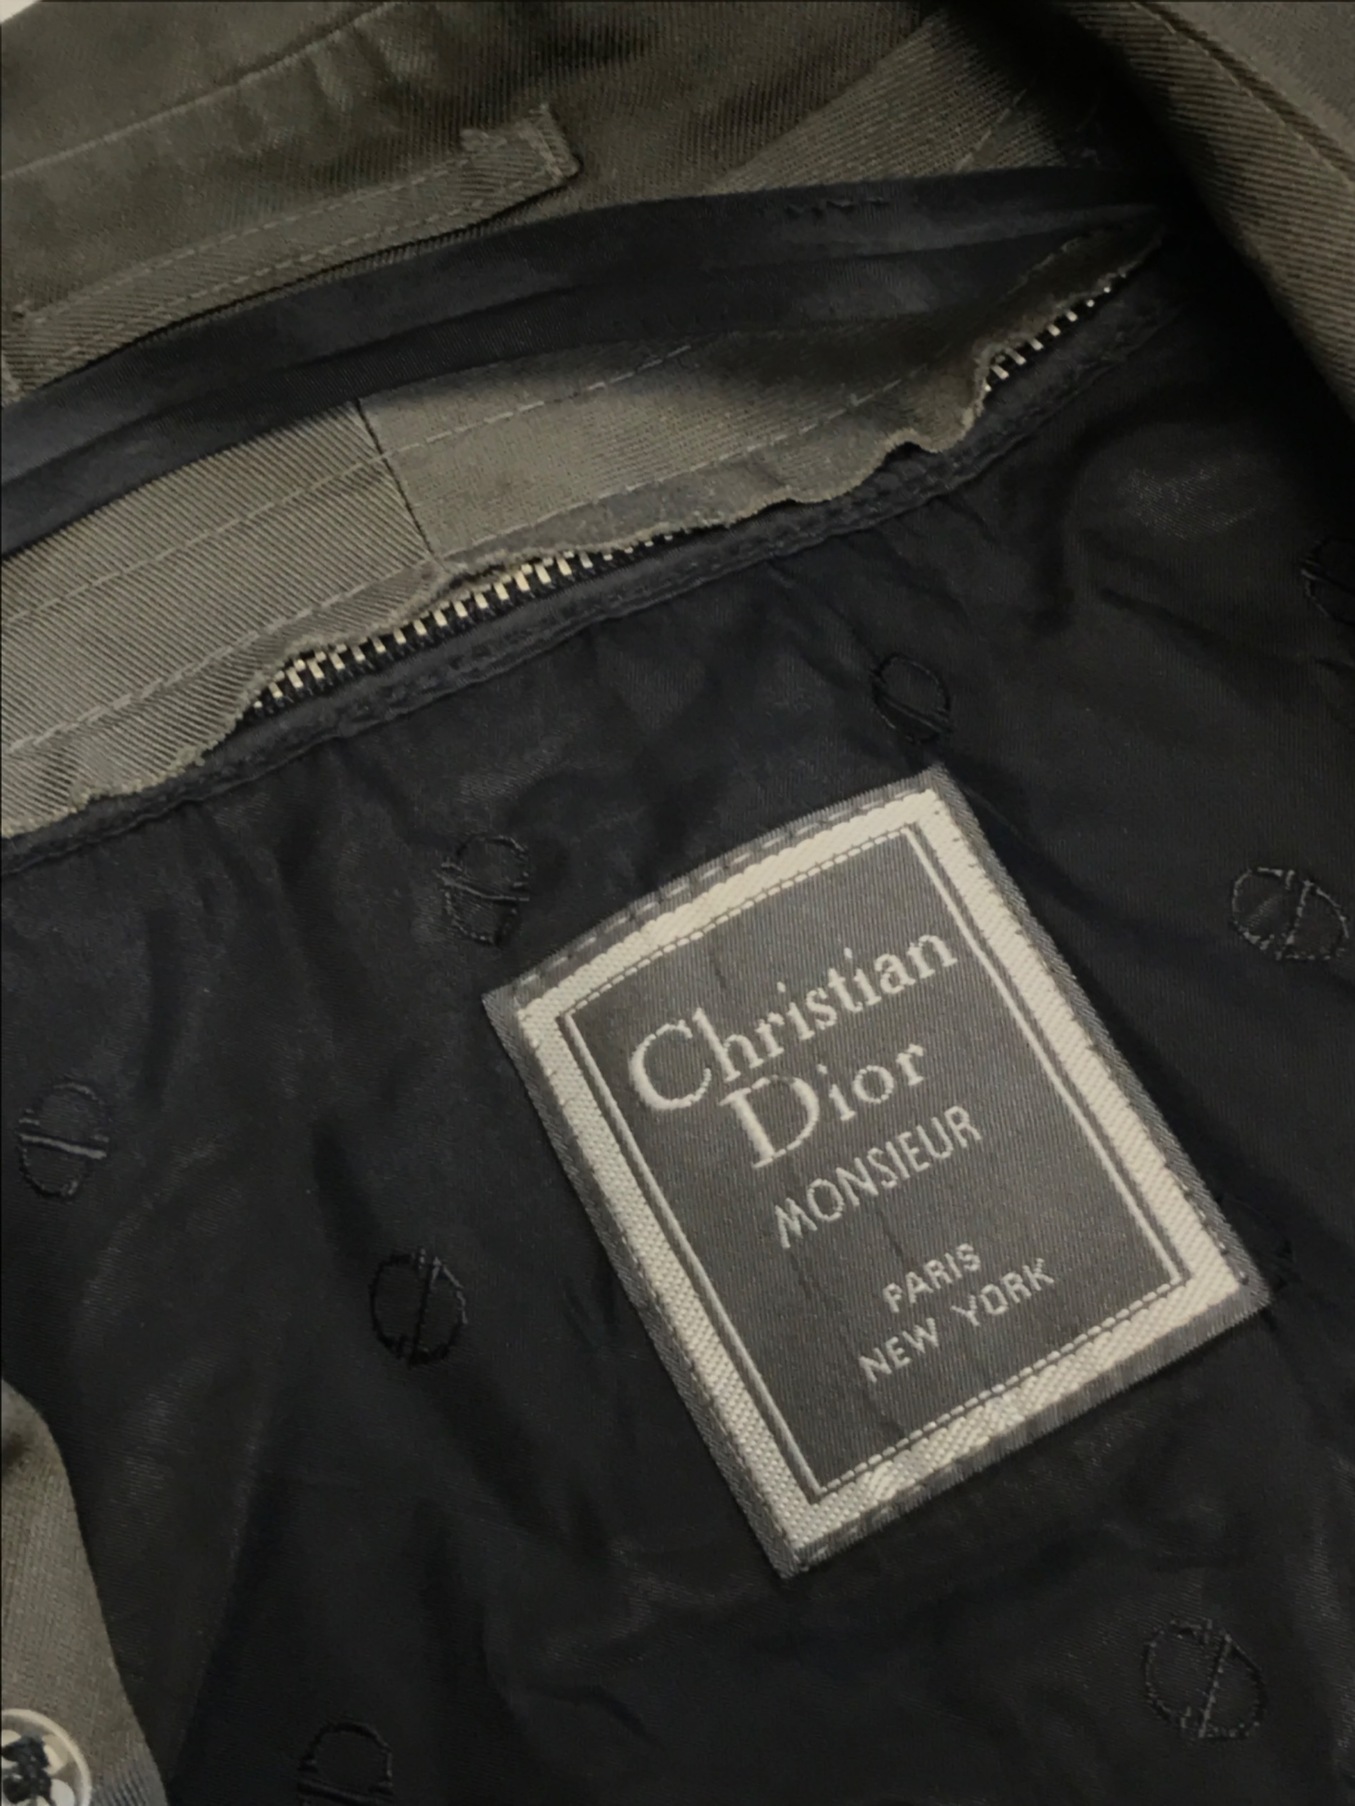 中古・古着通販】Christian Dior MONSIEUR (クリスチャンディオール